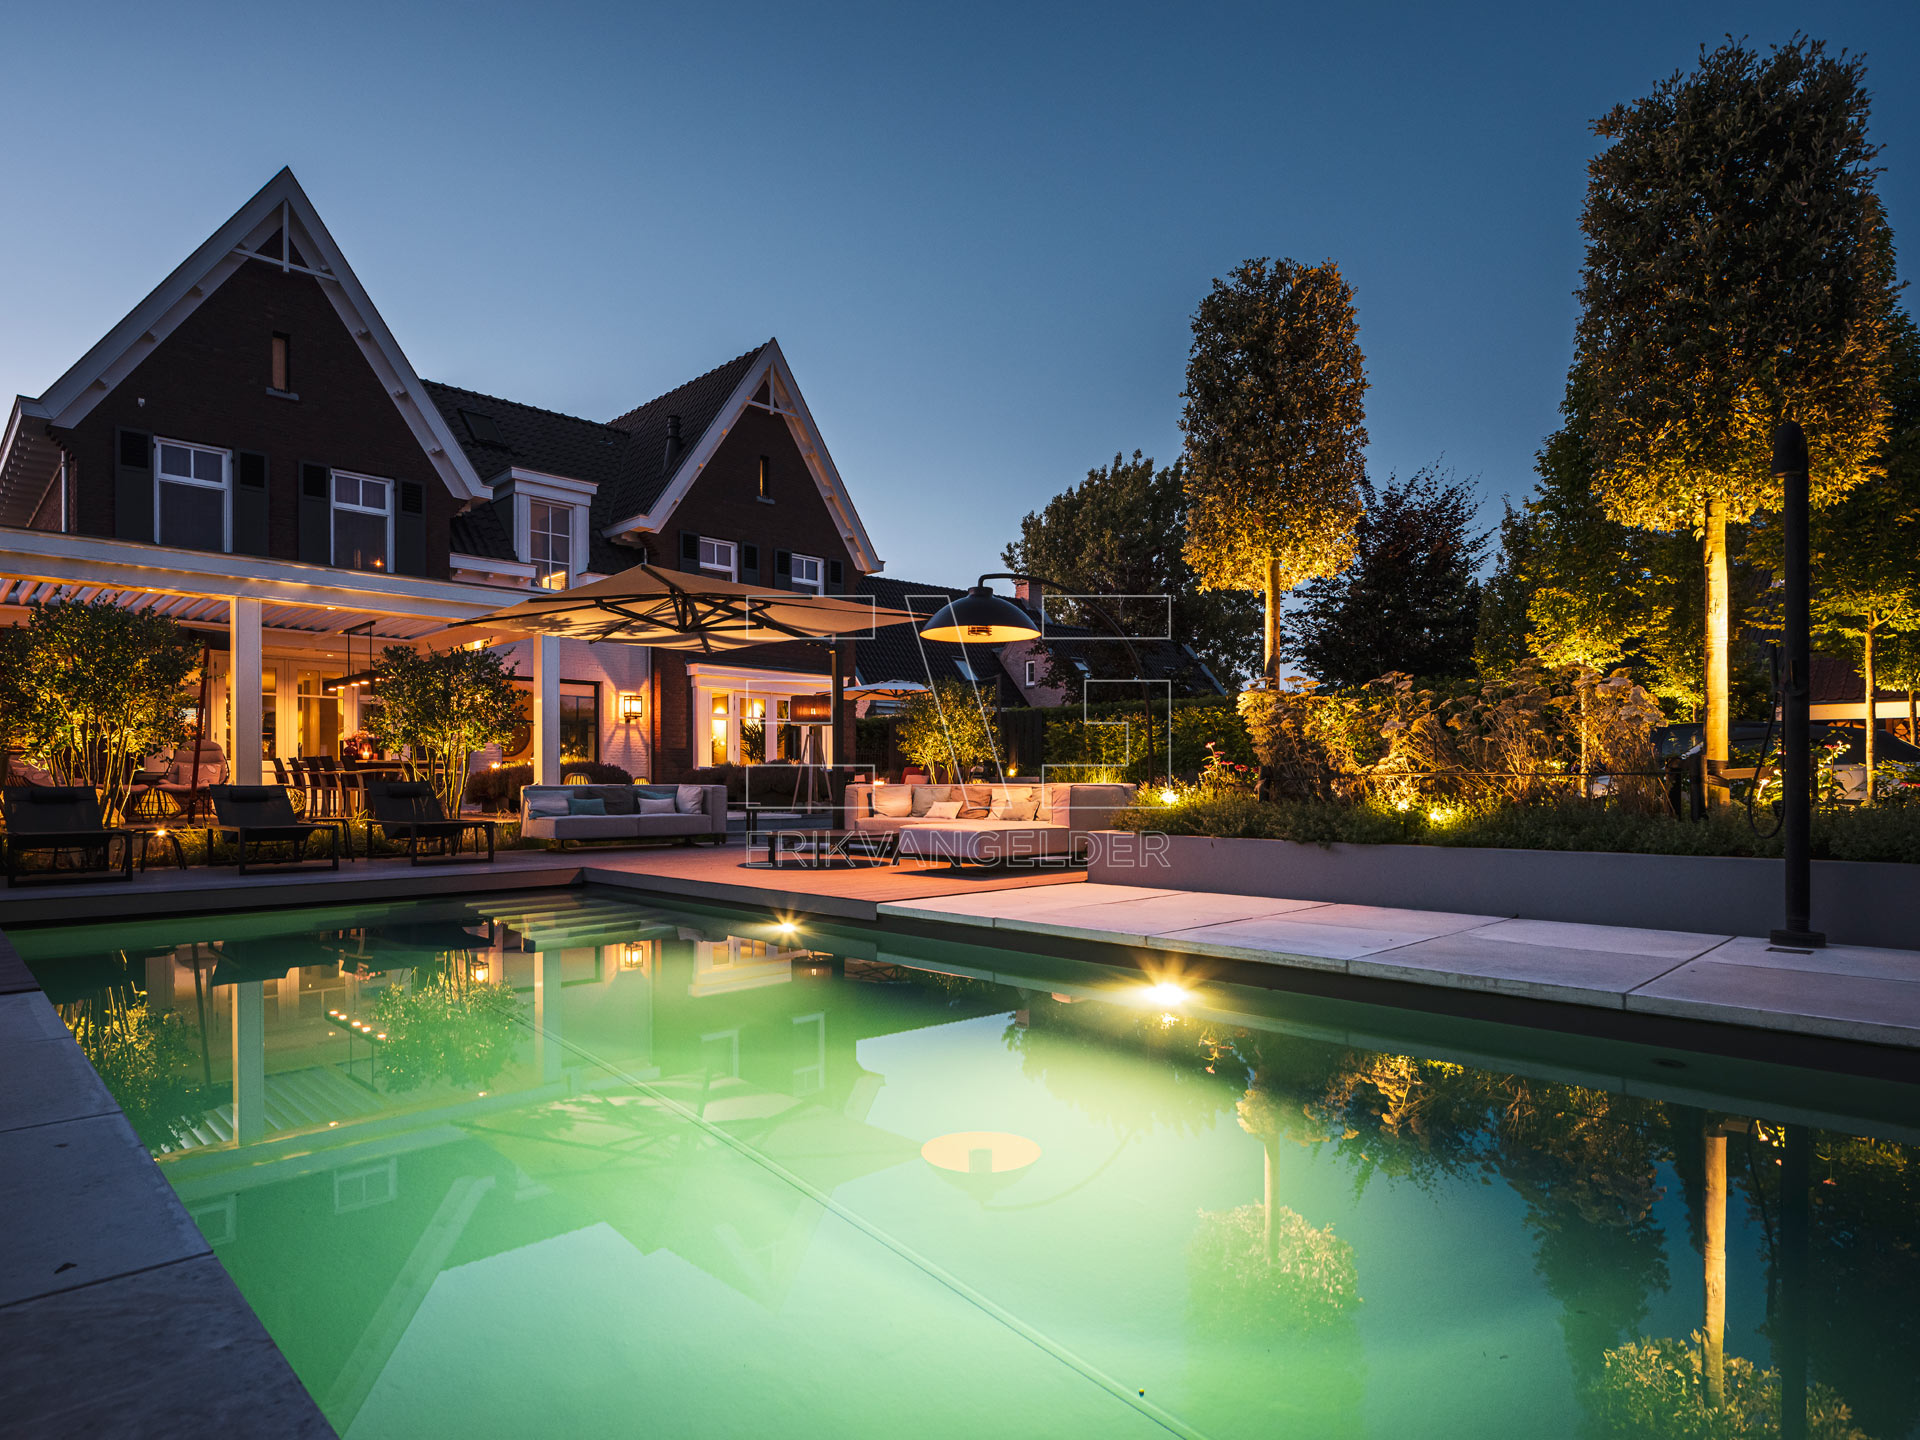 Luxe tuin met goede verlichting en mooi zwembad in de tuin